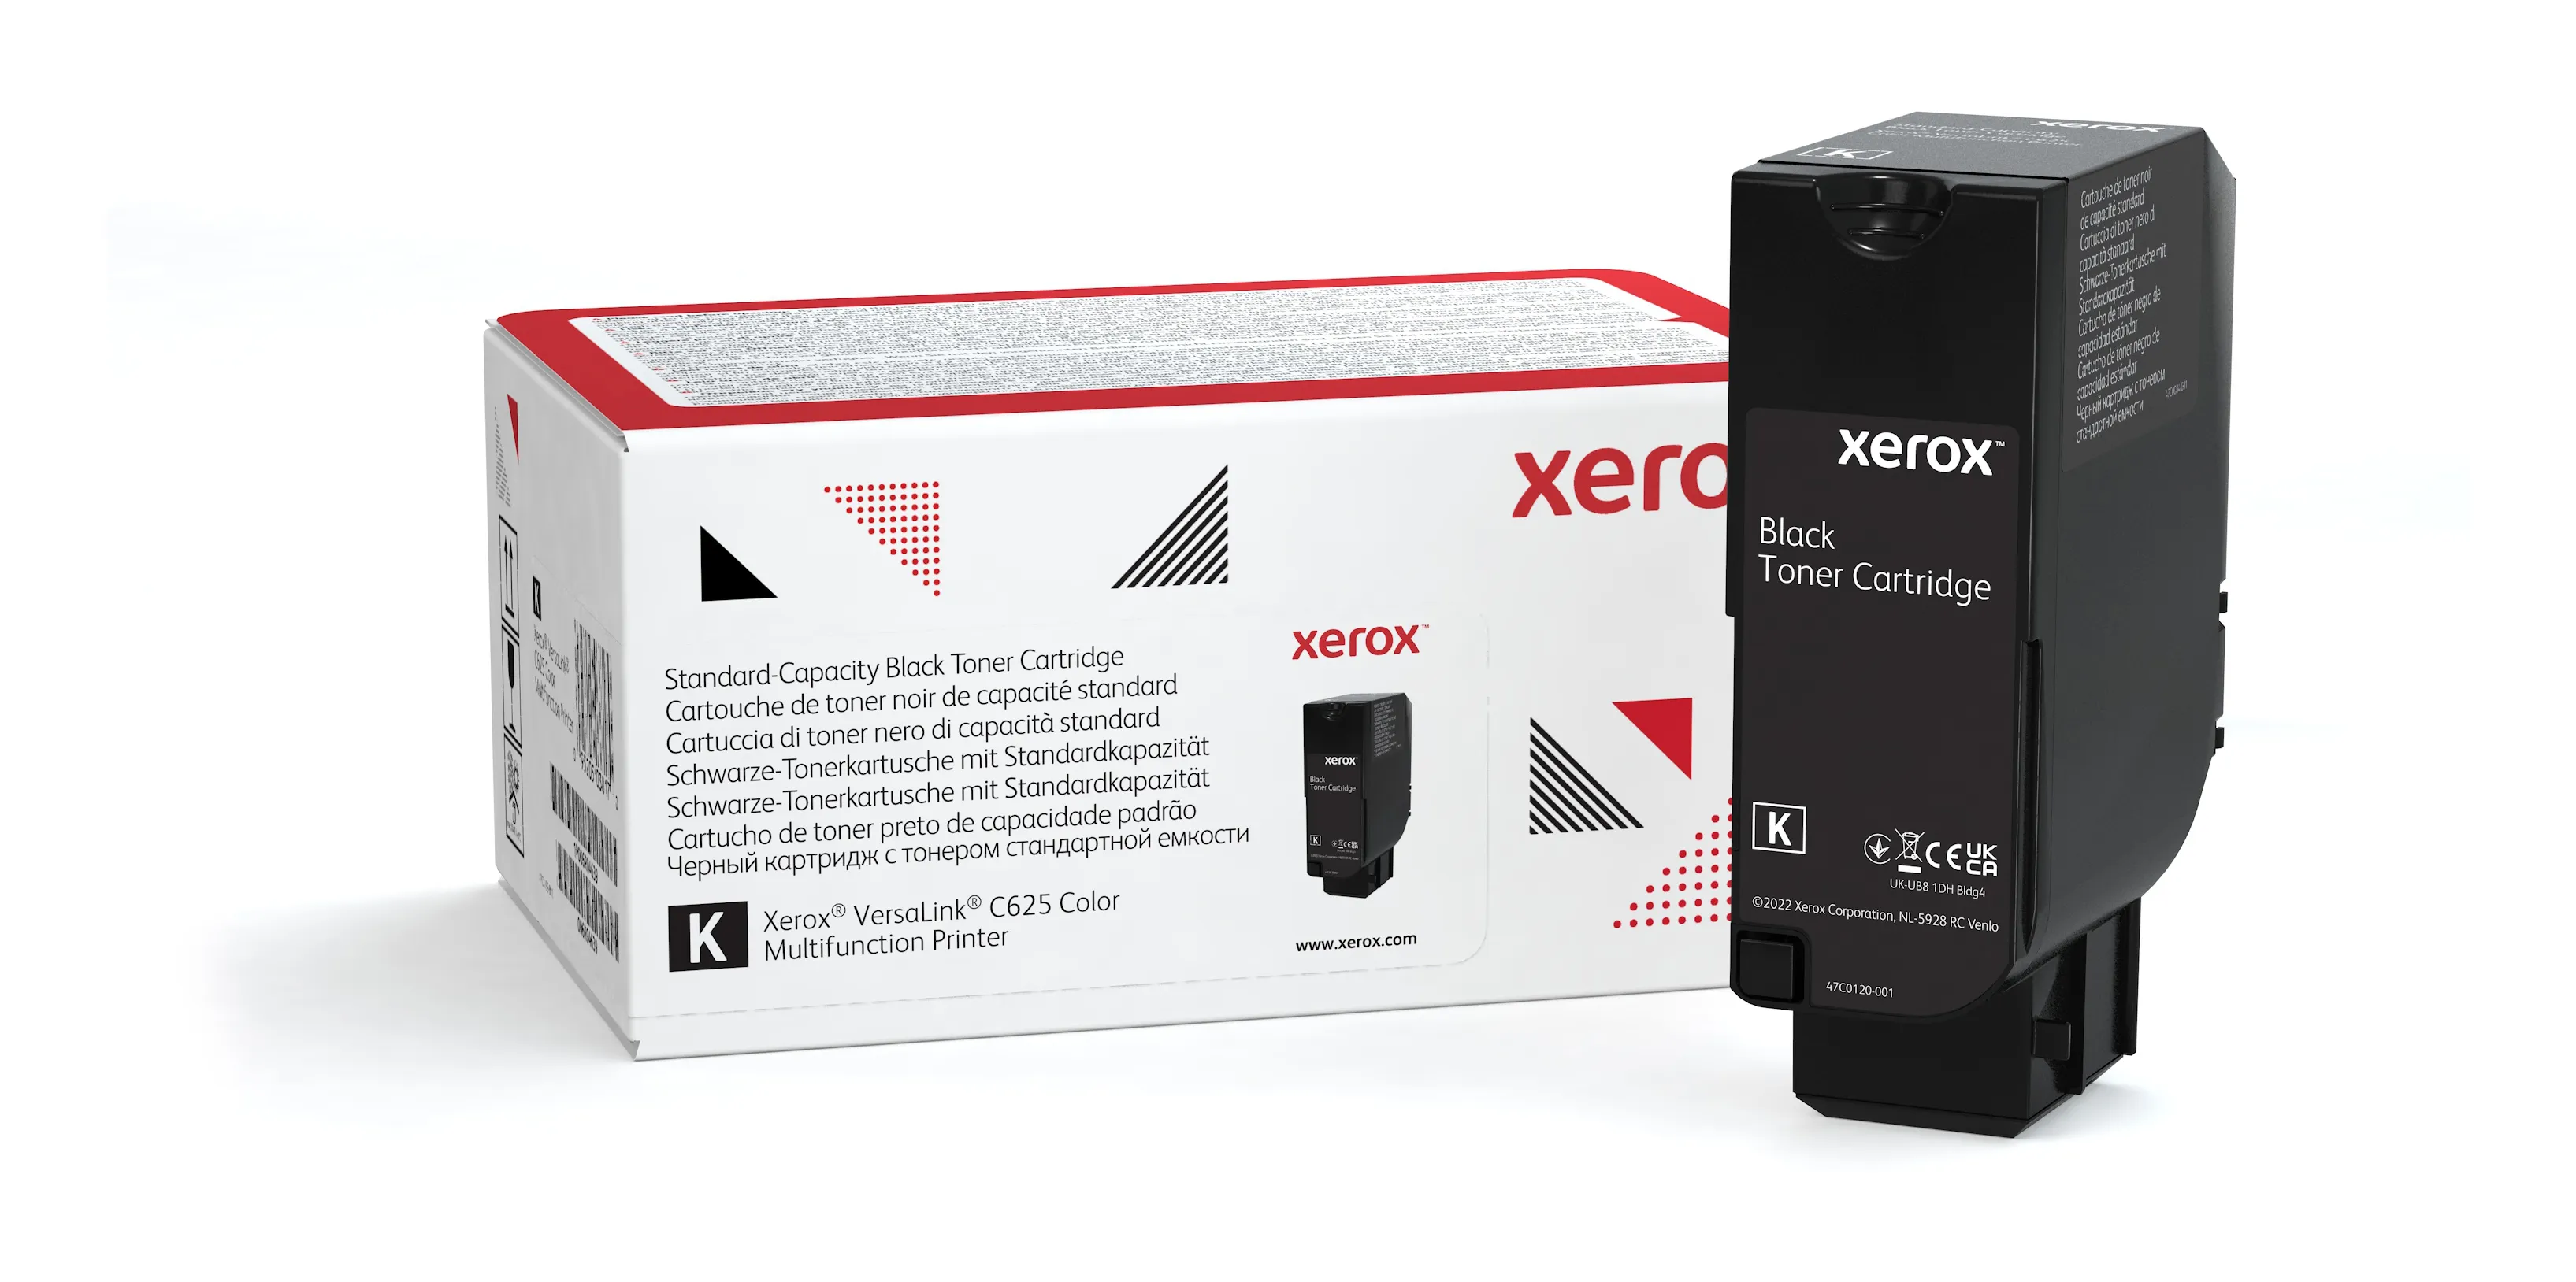 Achat Cartouche de toner Noir de Capacité standard Xerox et autres produits de la marque Xerox